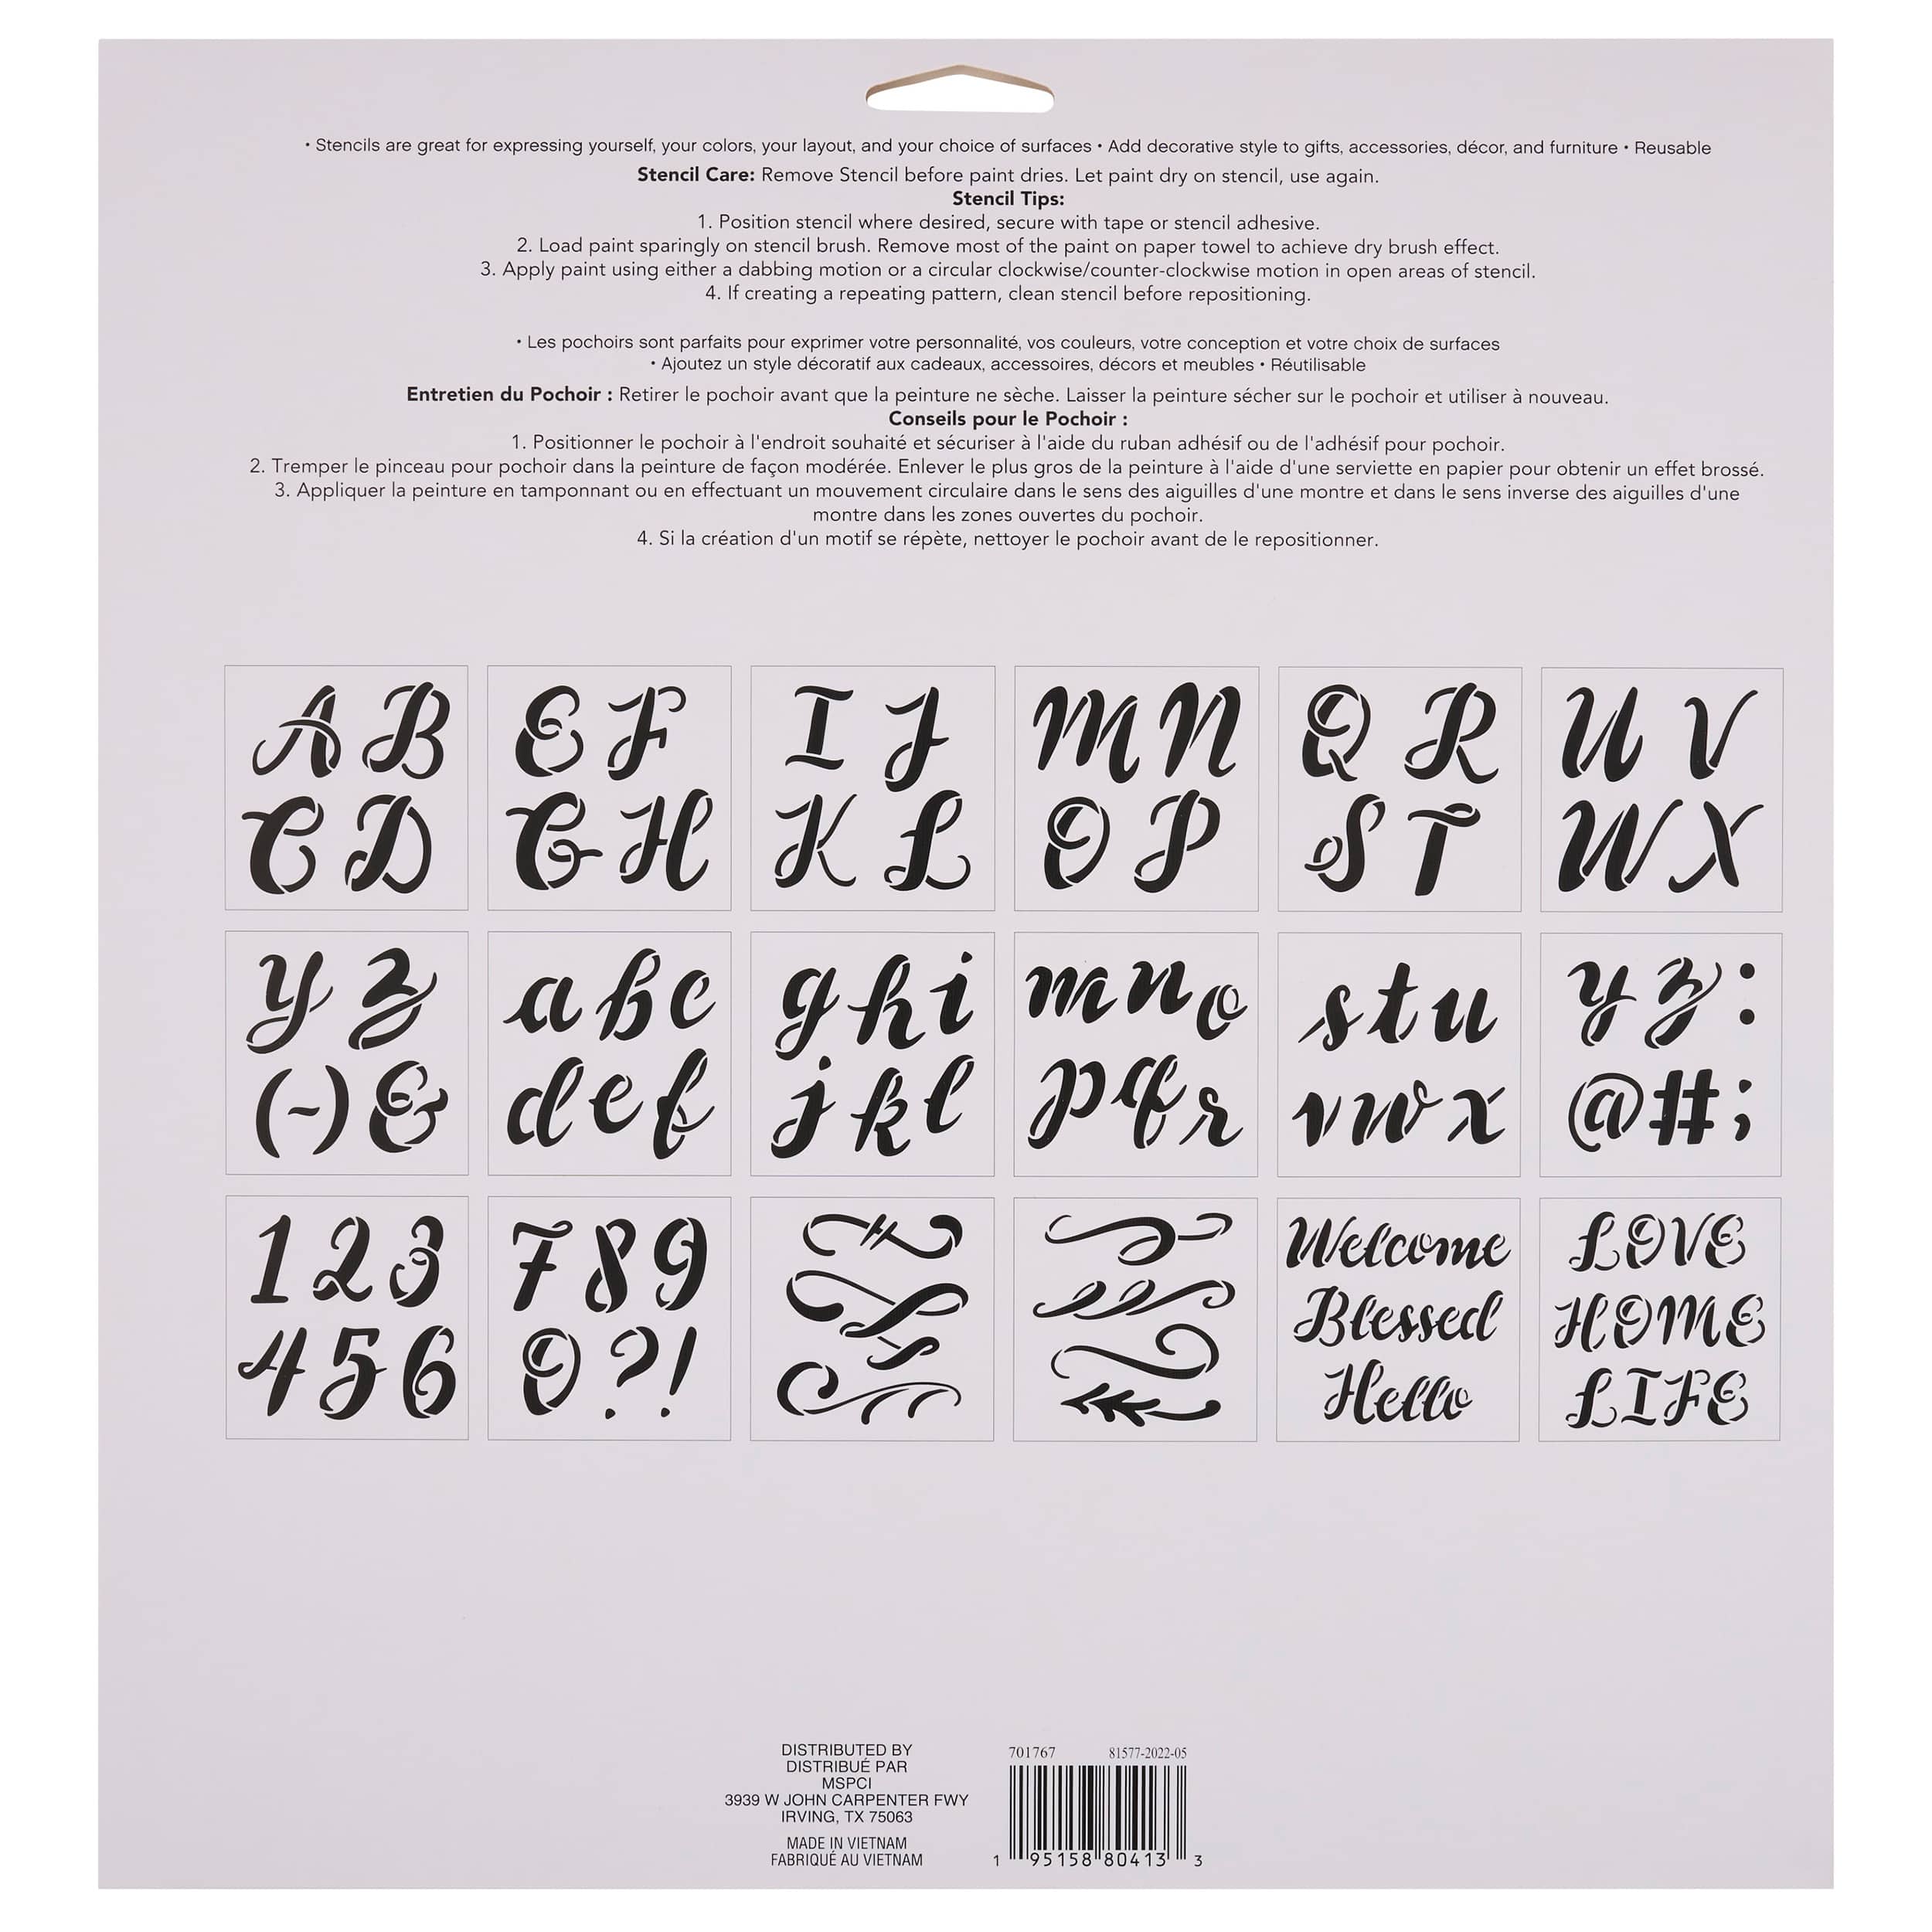 Alphabet Handlettered Script Stencils, 12&#x22; x 12&#x22; by Craft Smart&#xAE;